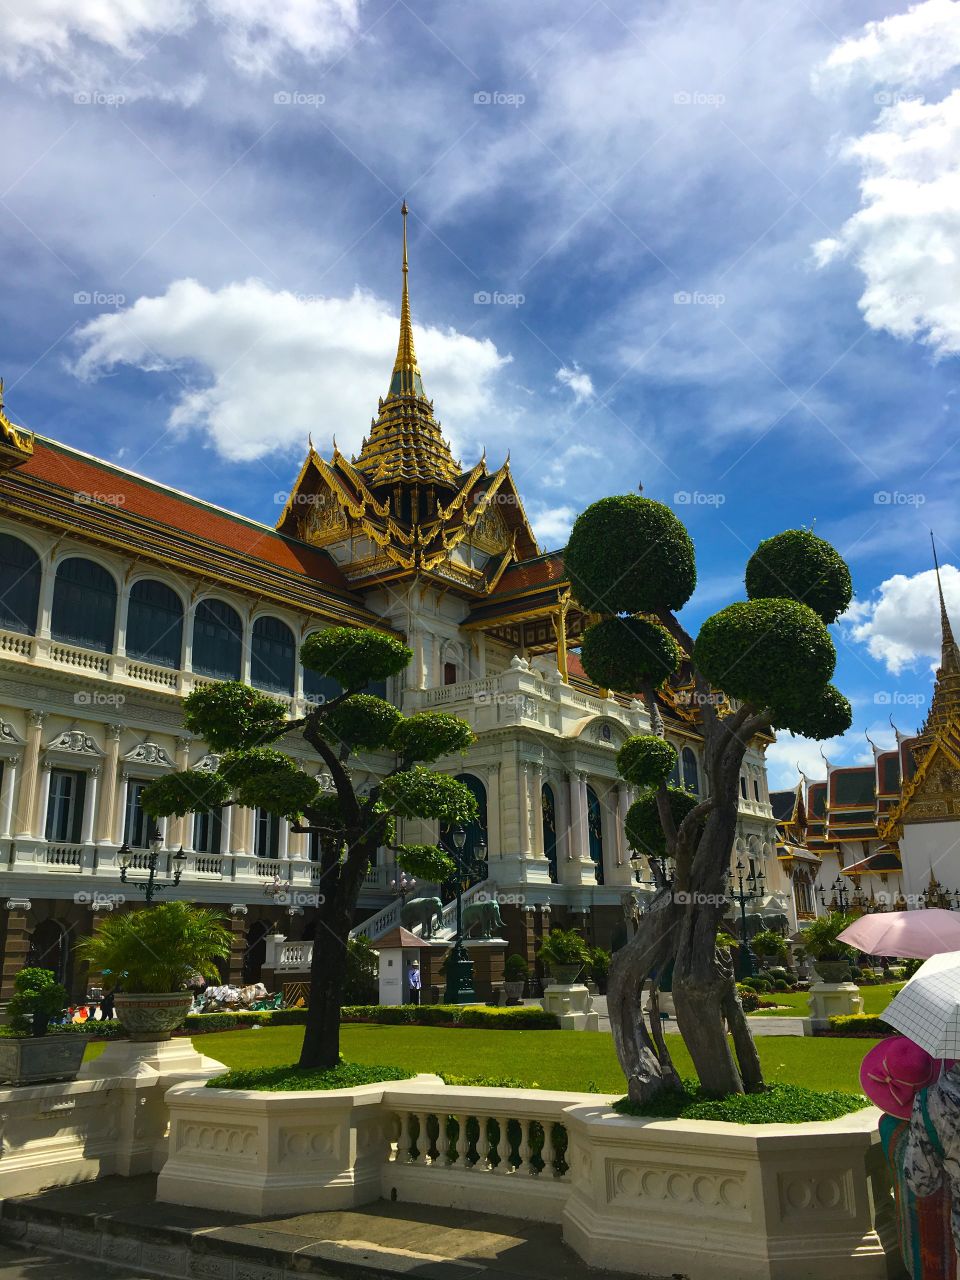 Grand Palace / Bangkok Thailand 82